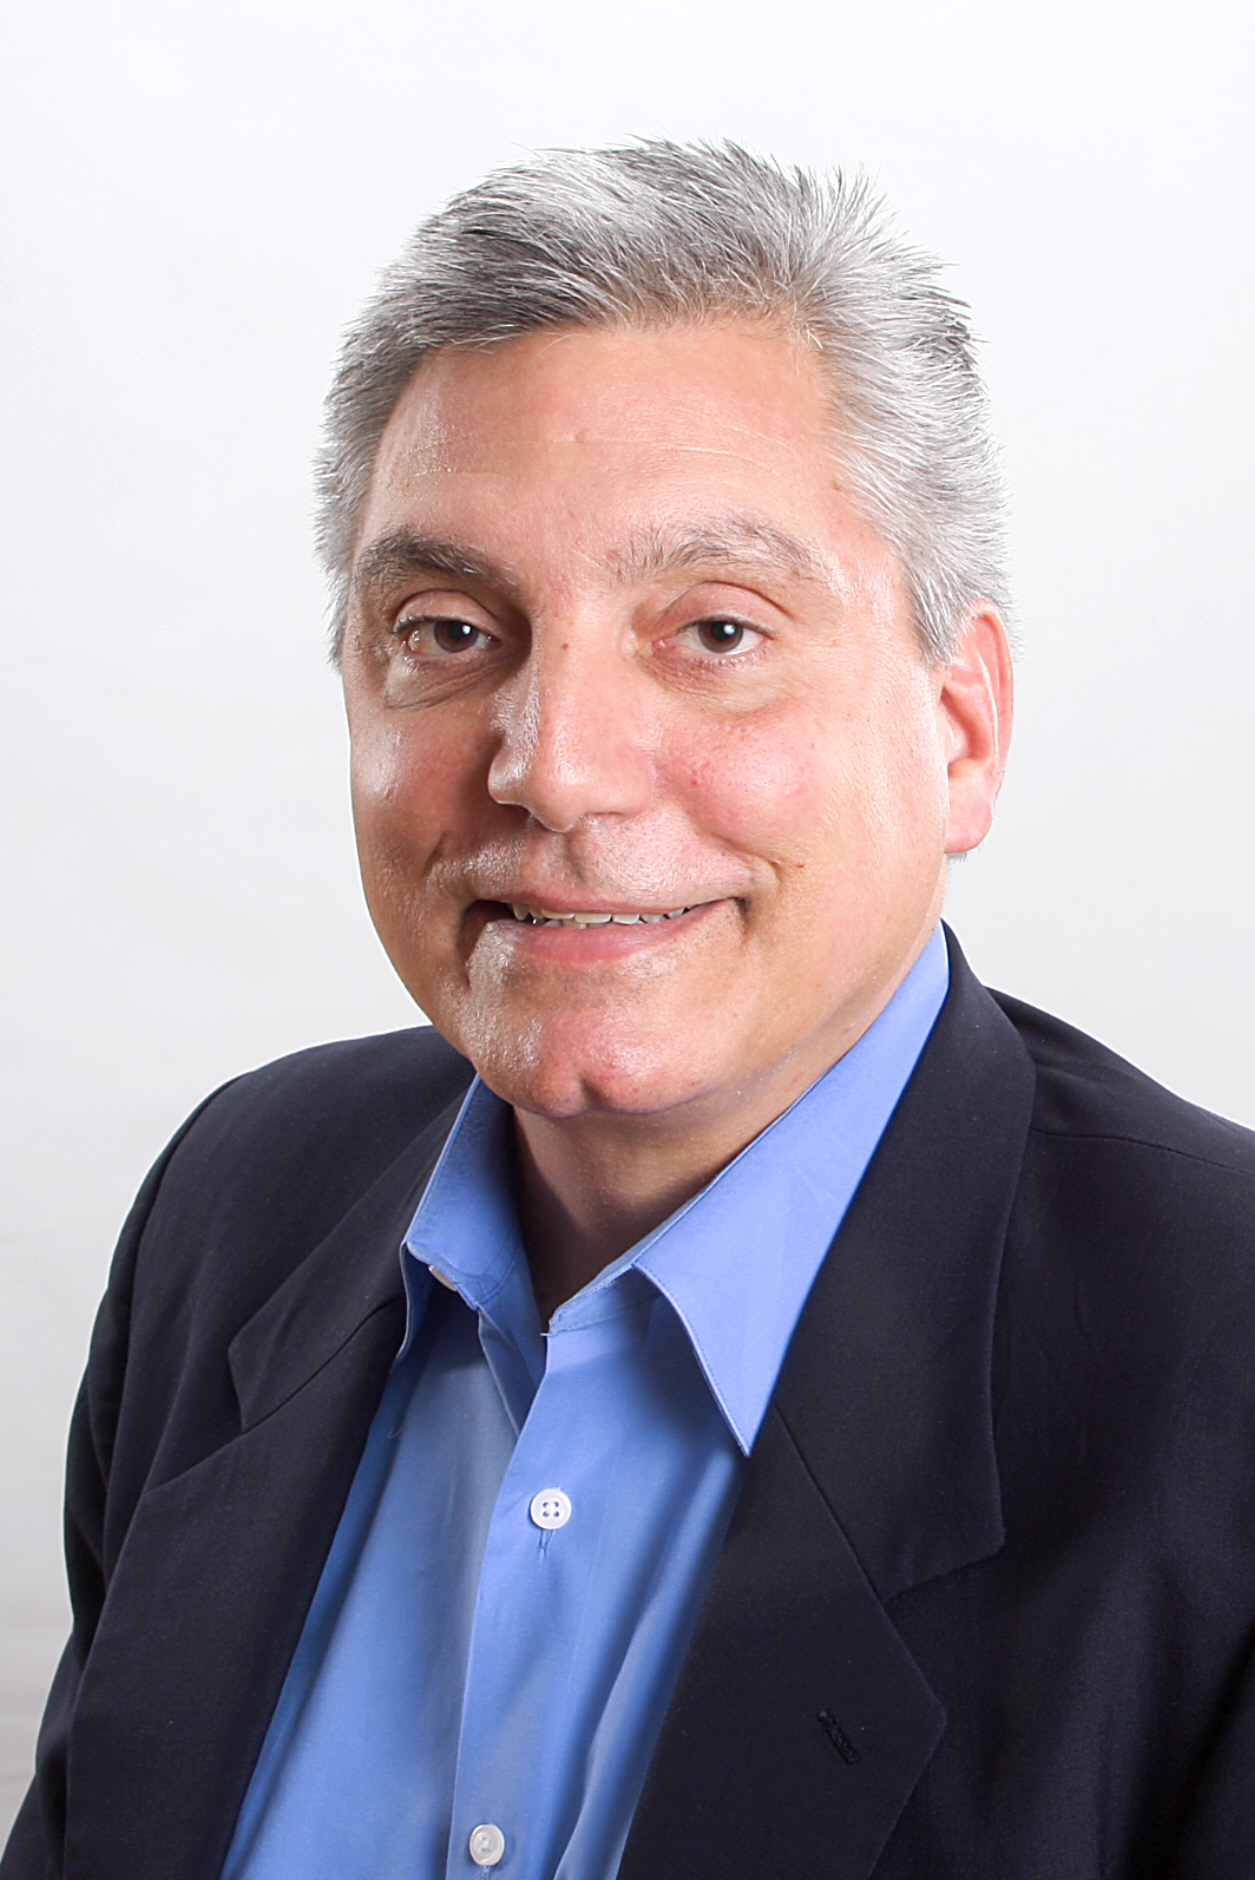 Fred Wiesler, VP of sales at Cerahelix.